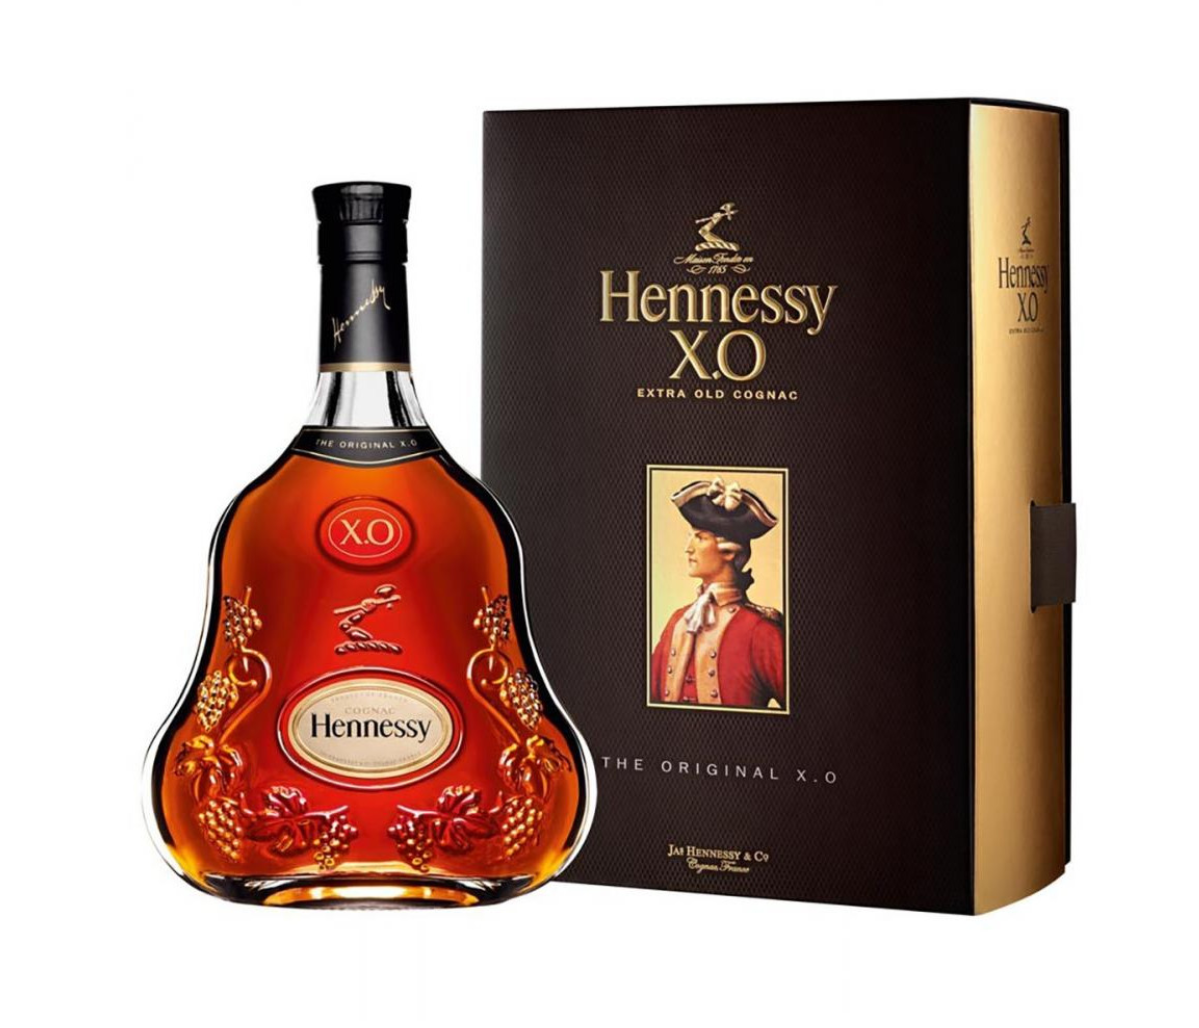 Коньяк Hennessy XO 20 лет выдержки, в подарочной упаковке, 40%, 0,7 л (1103) - фото 2